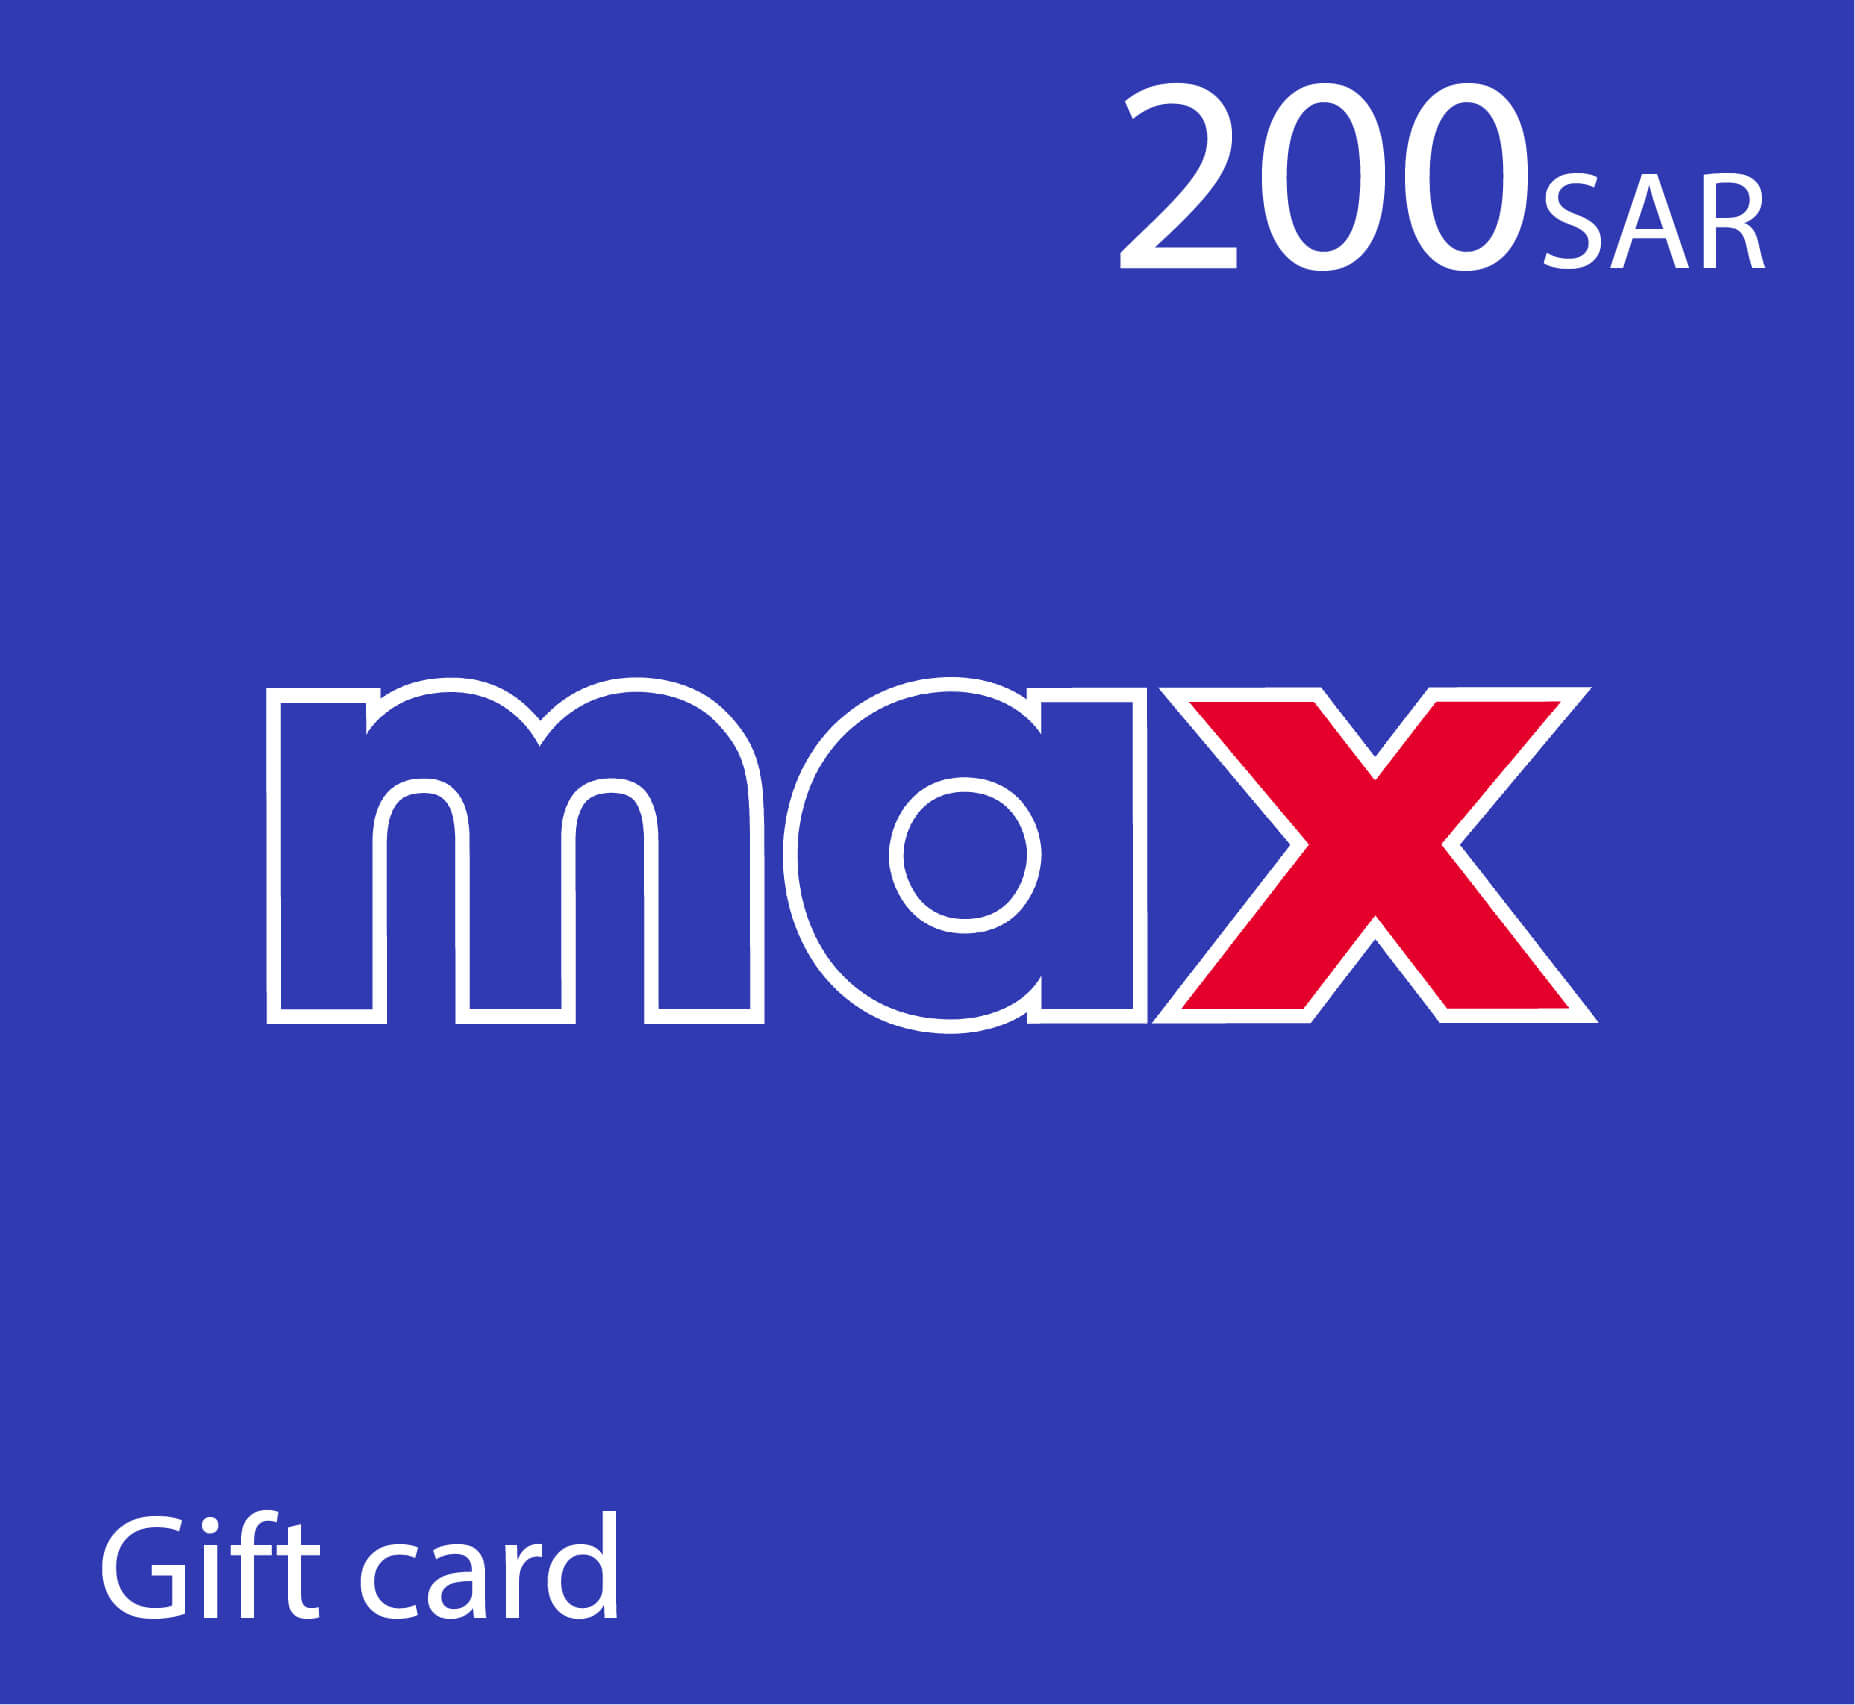 Max Gift card - 200 SAR